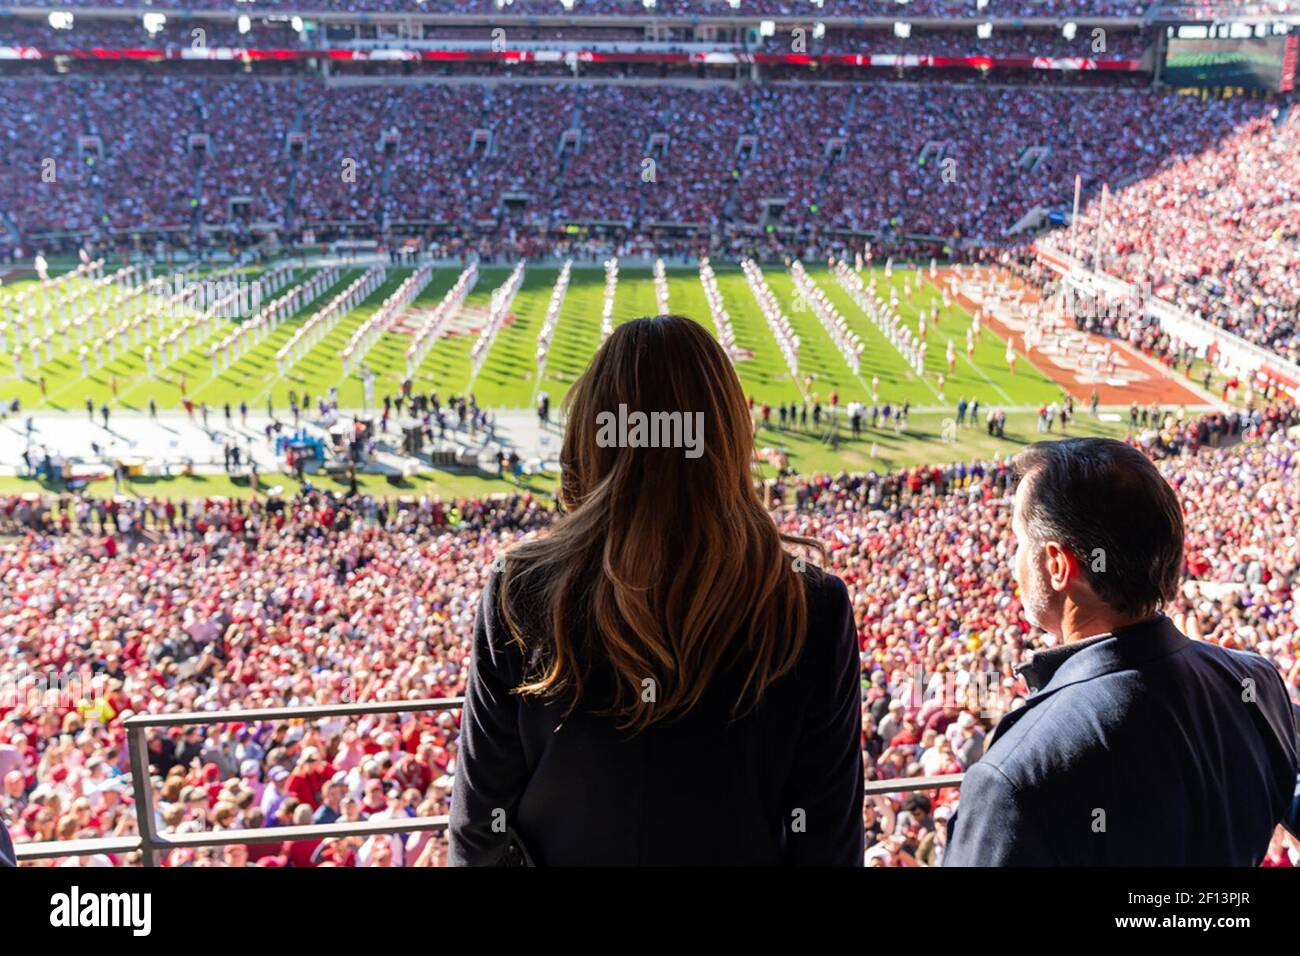 First Lady Melania Trump observe l'action sur le terrain au stade Bryant-Denny le samedi 9 2019 novembre tout en assistant au match de football de l'Université d'Alabama-Louisiana State University à Tuscaloosa Ala Banque D'Images